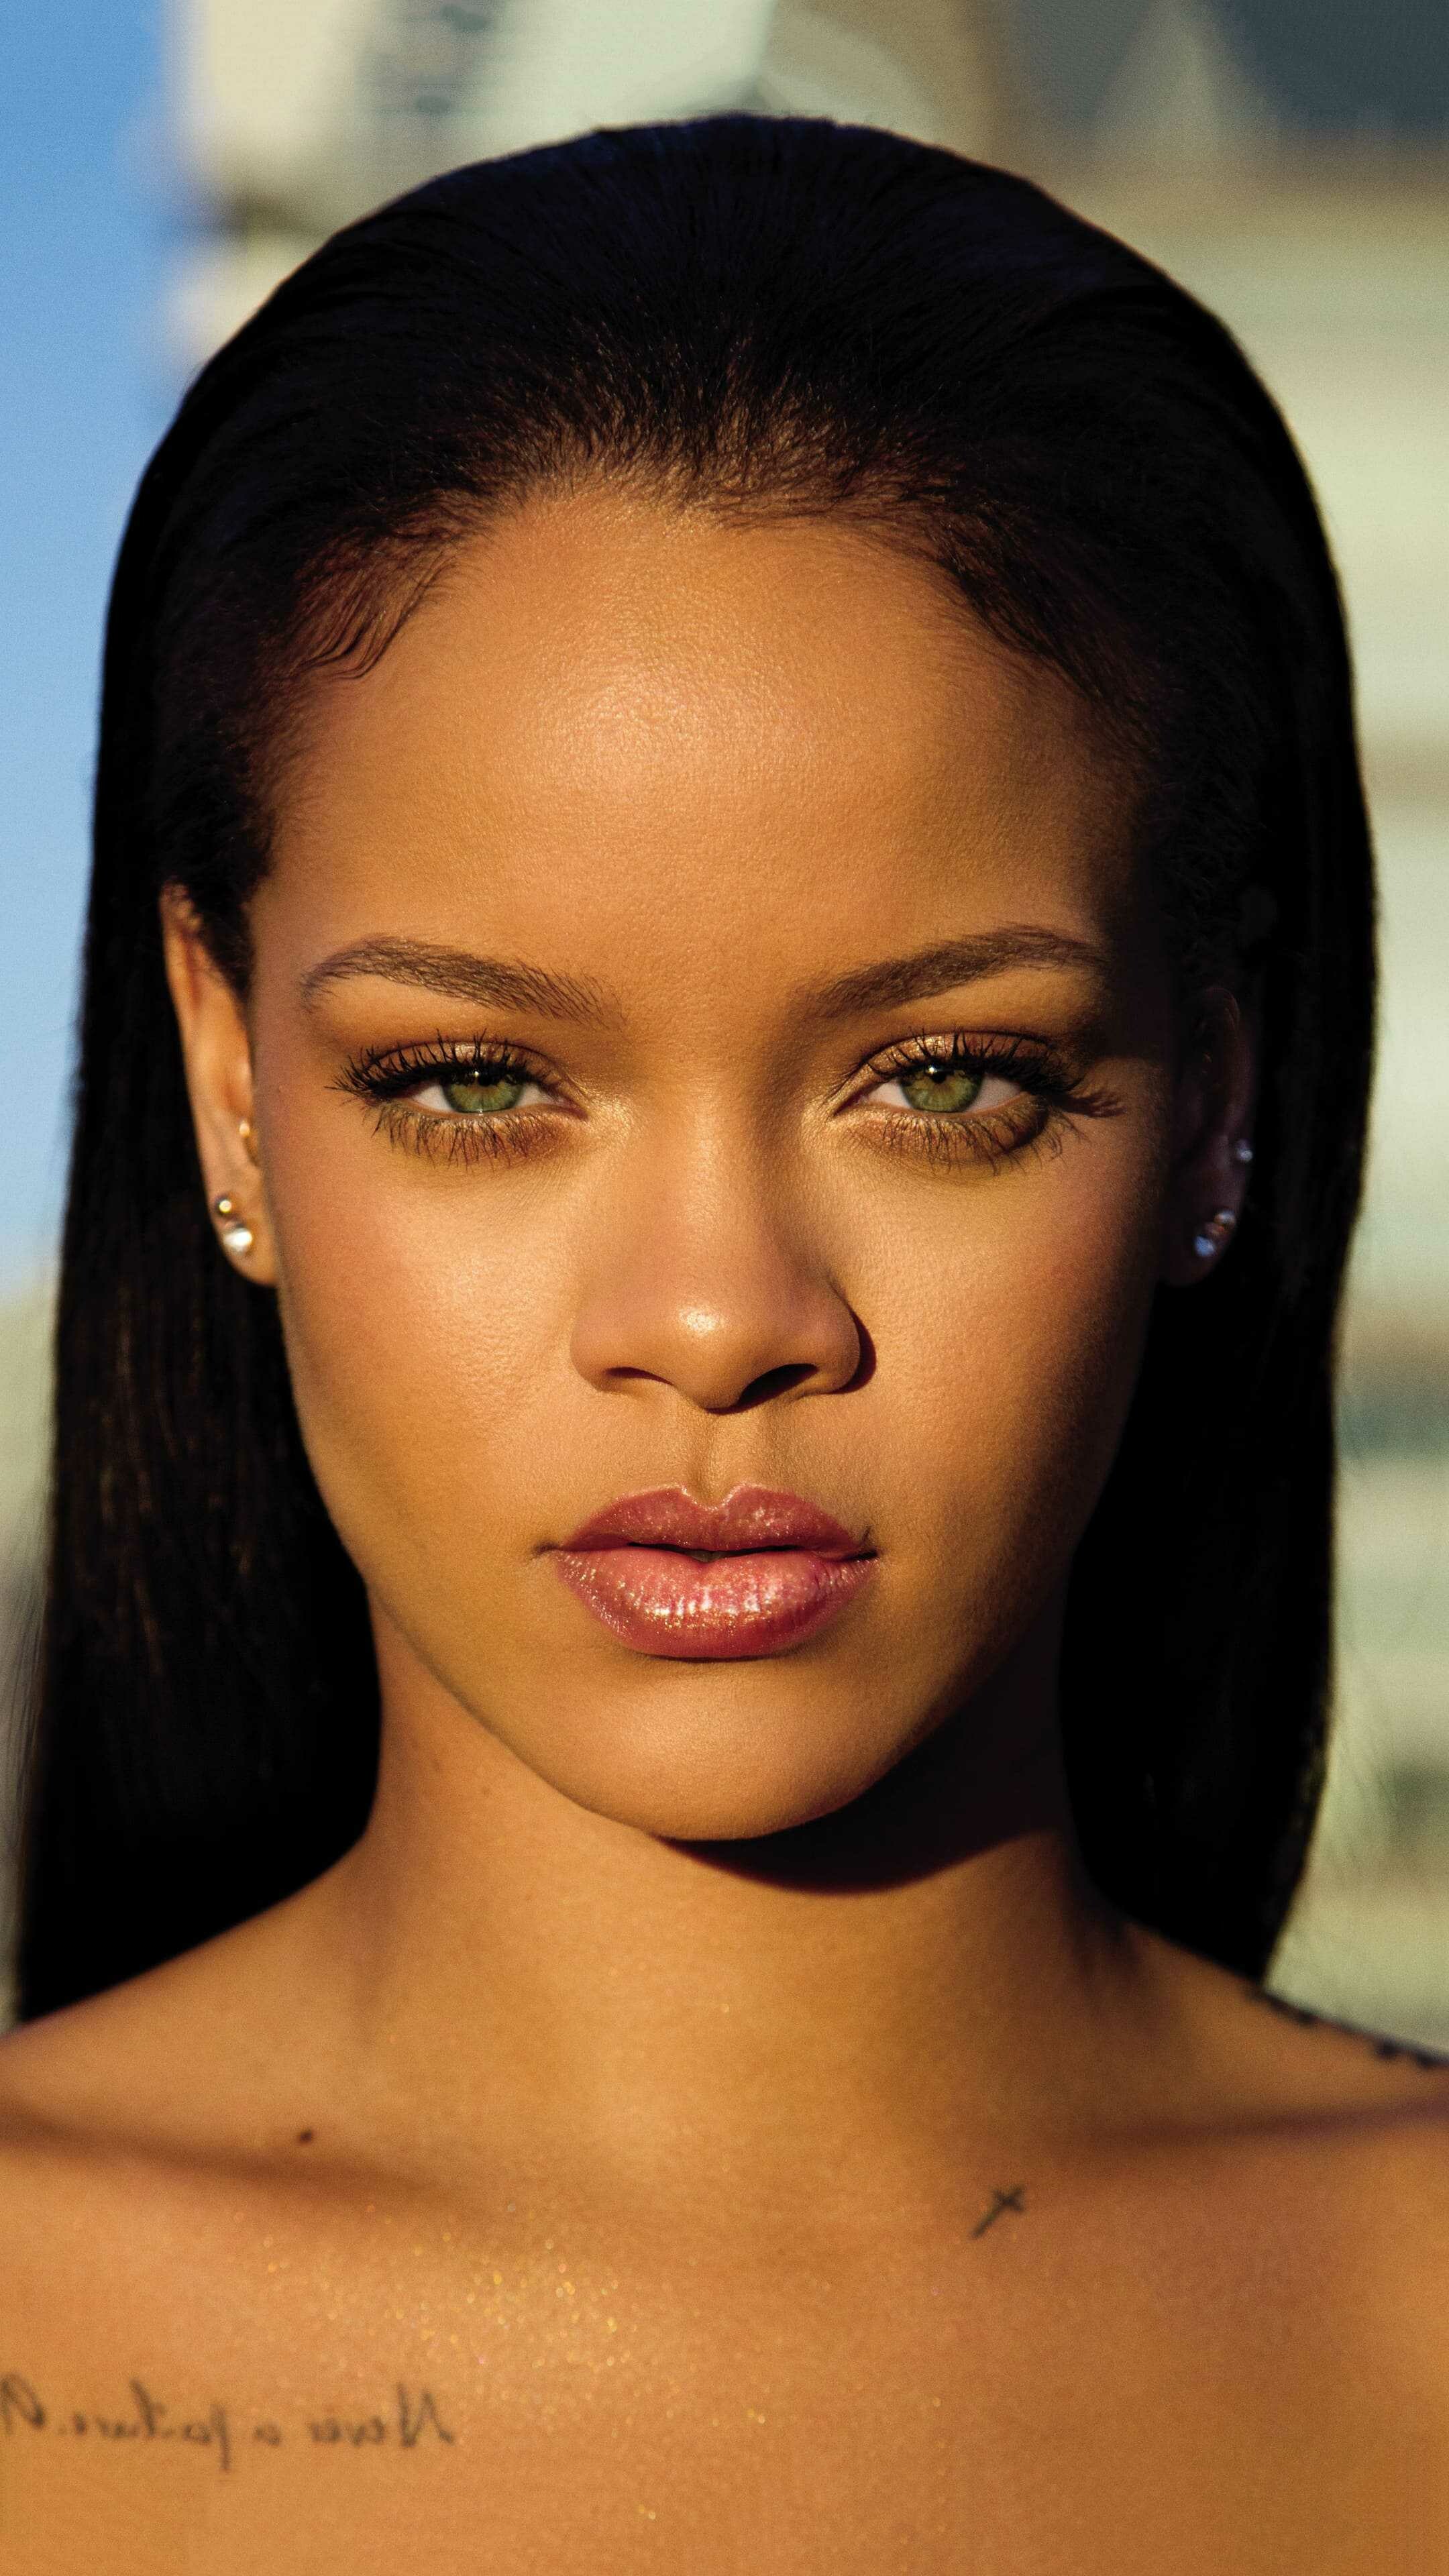 Rihanna: Robyn Rihanna Fenty NH, Born in Barbados. 2160x3840 4K Wallpaper.